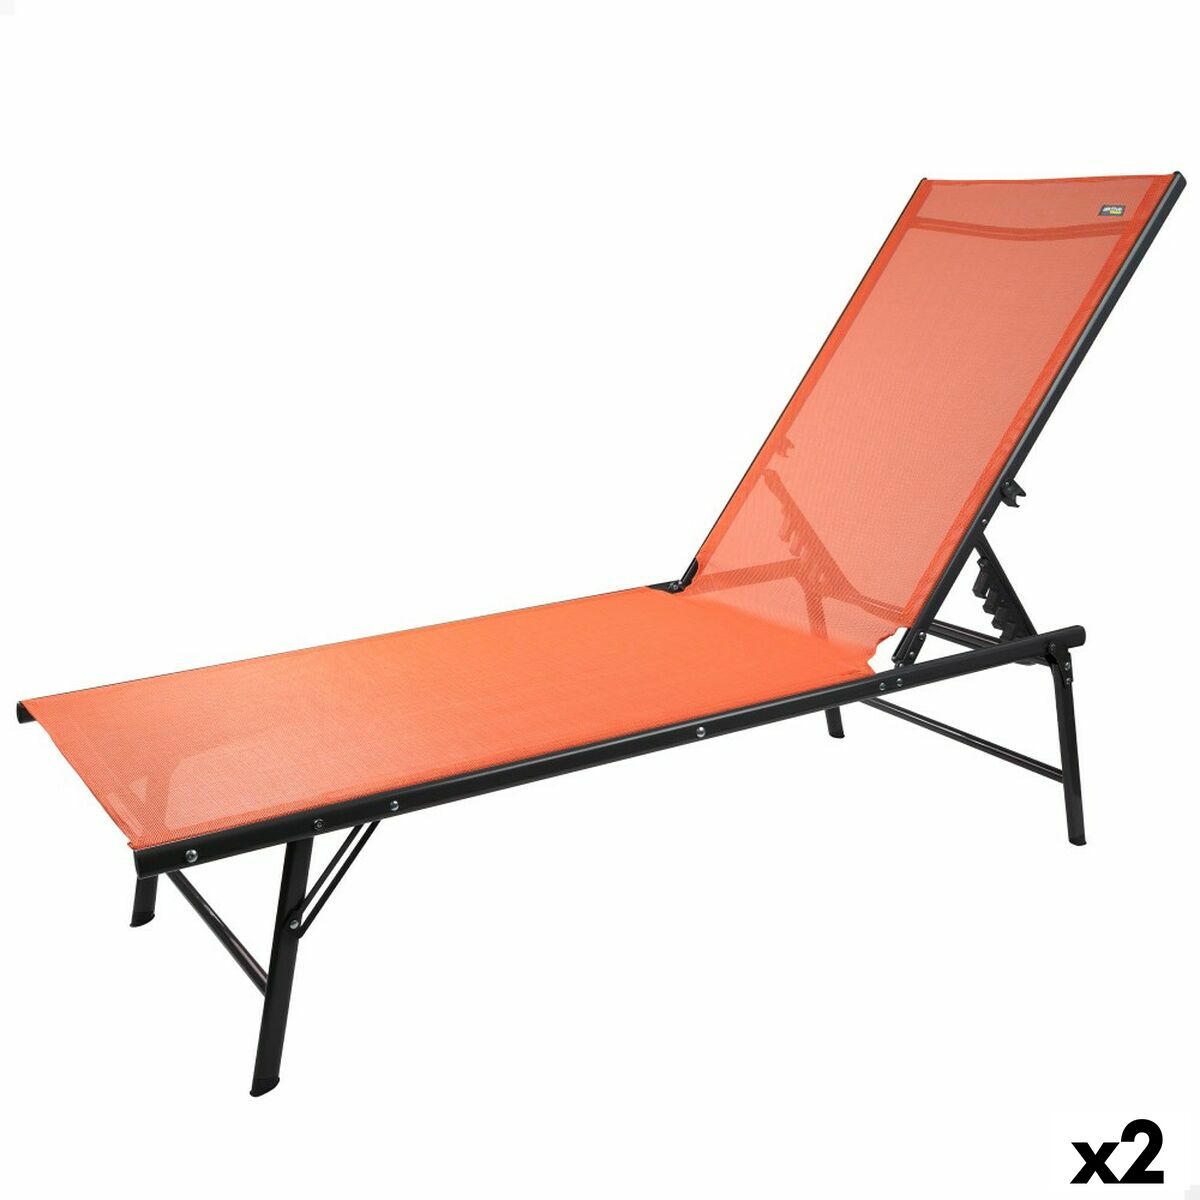 Chaise longue inclinable Aktive Orange 180 x 35 x 49 cm (2 Unités)